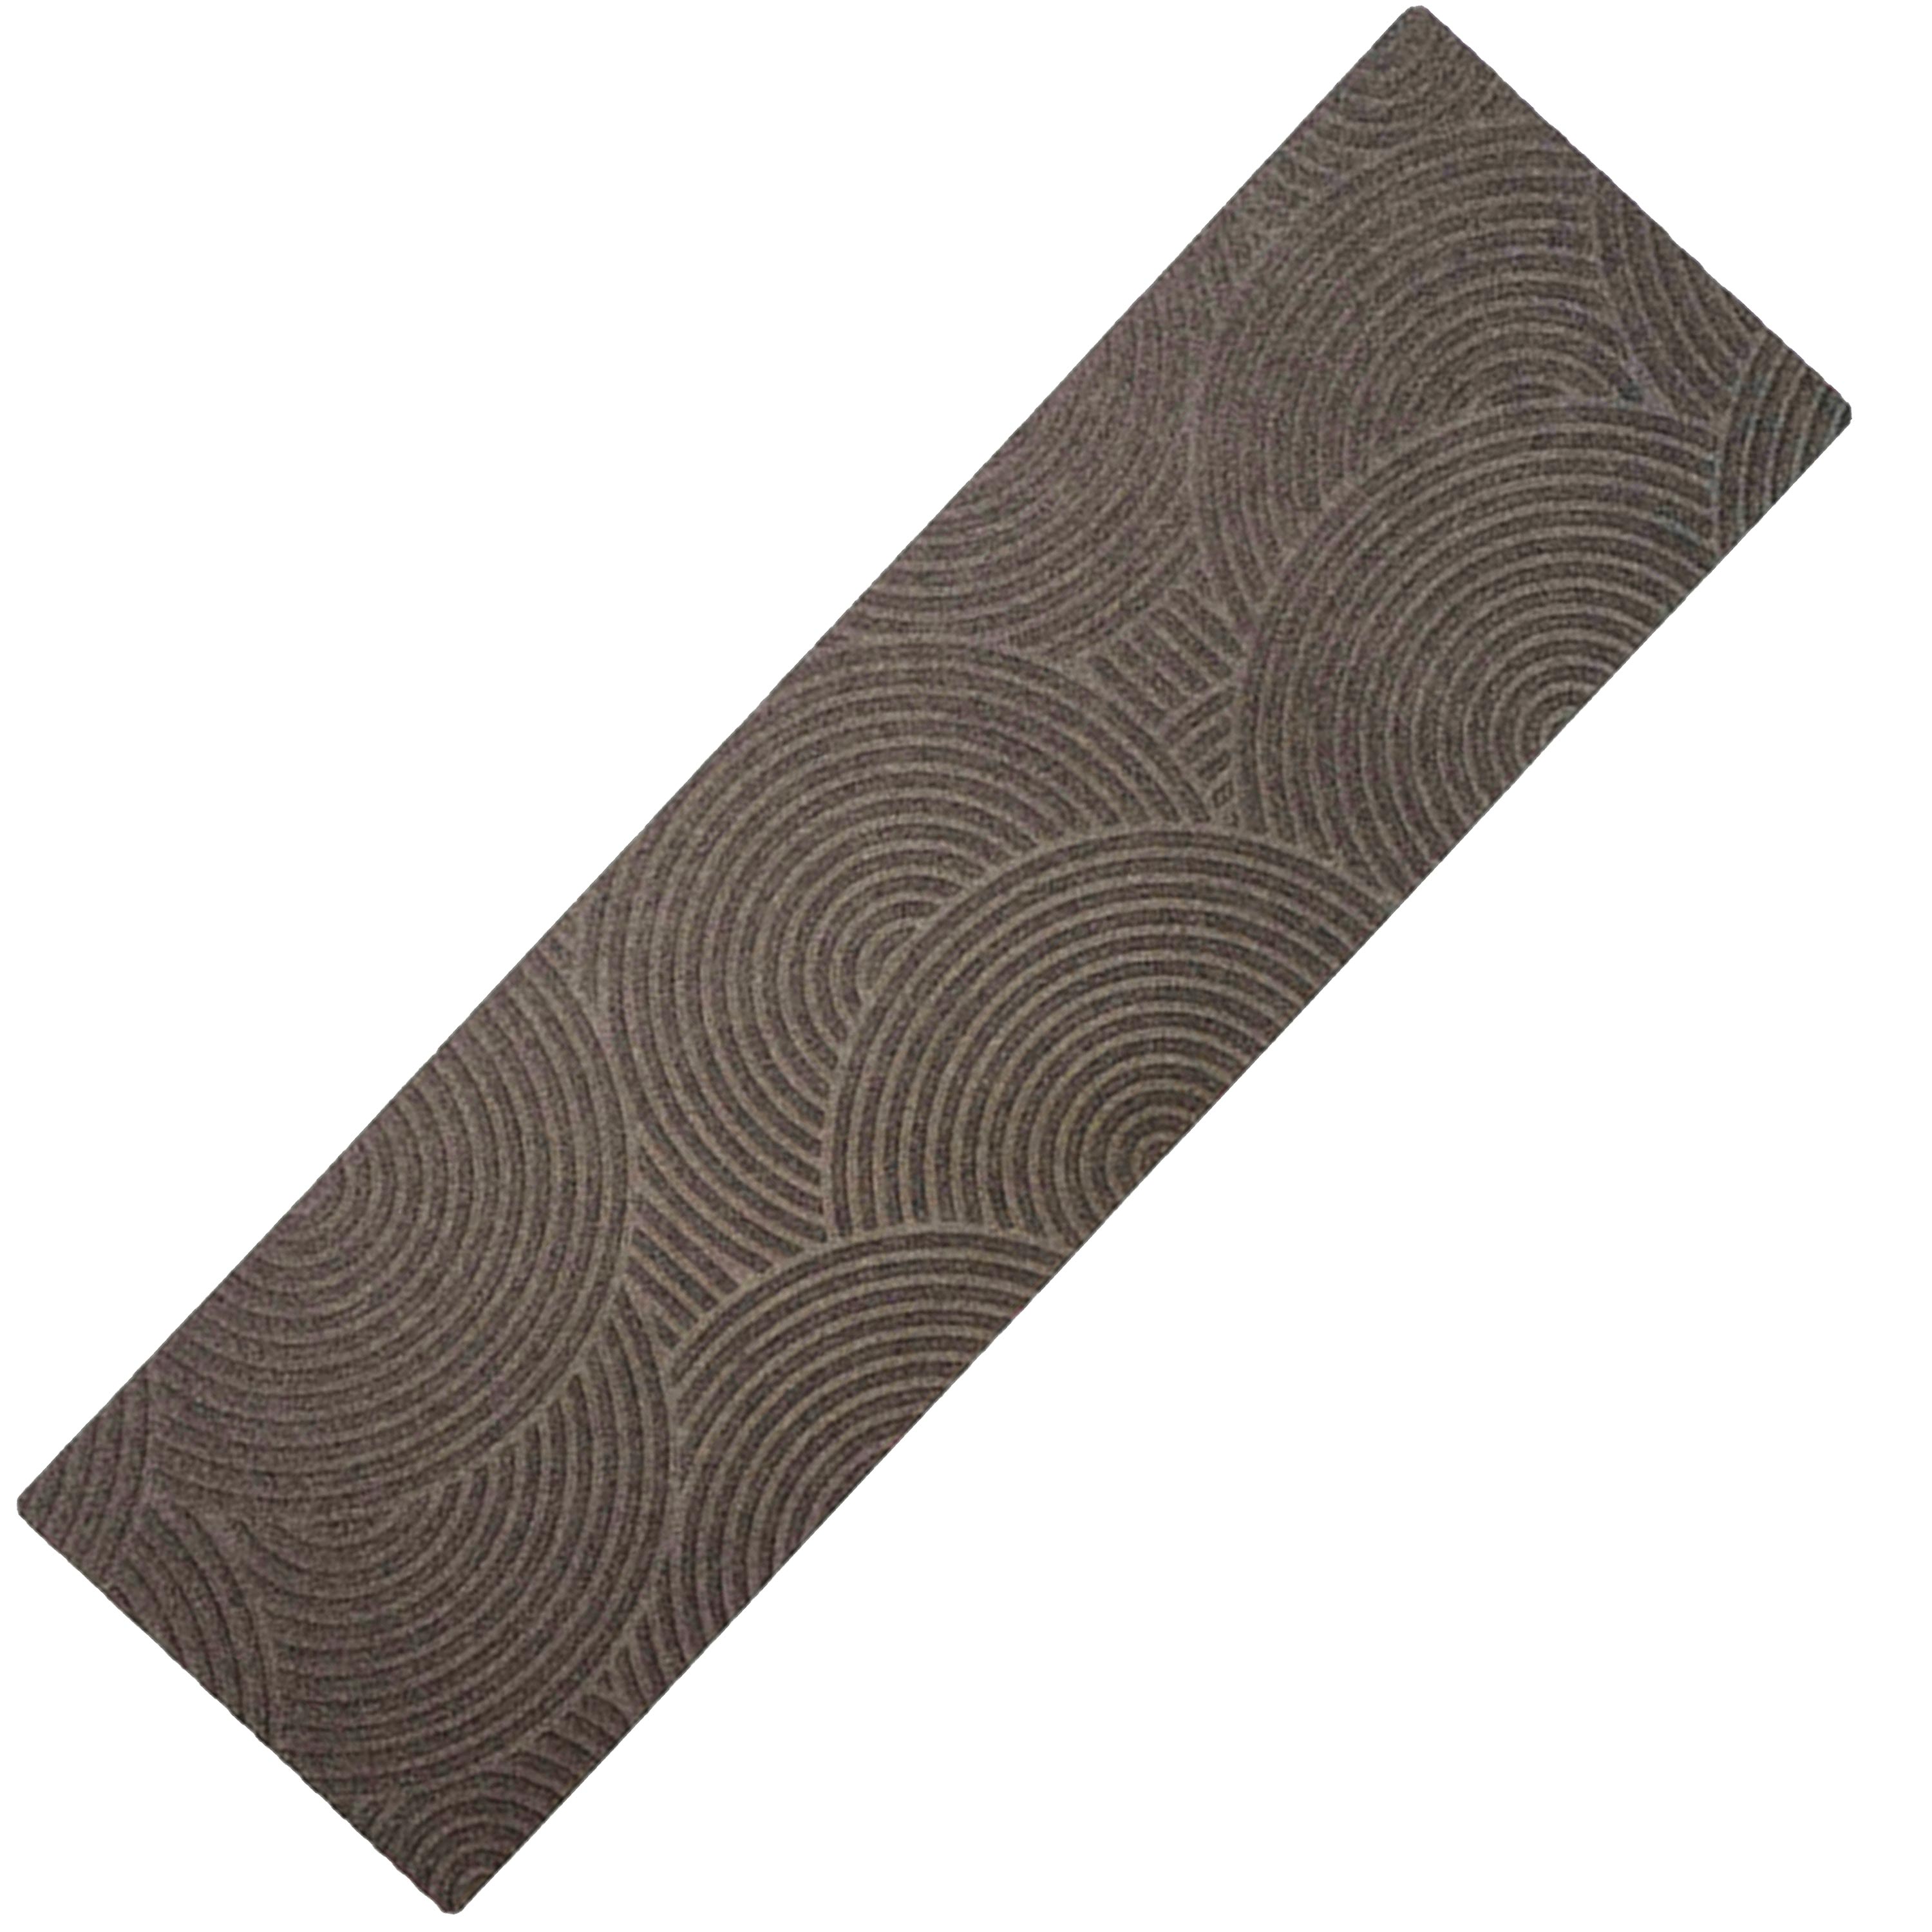 Waterhog Luxe Sand Double Doormat, 21.5"W x 70"L swatch image